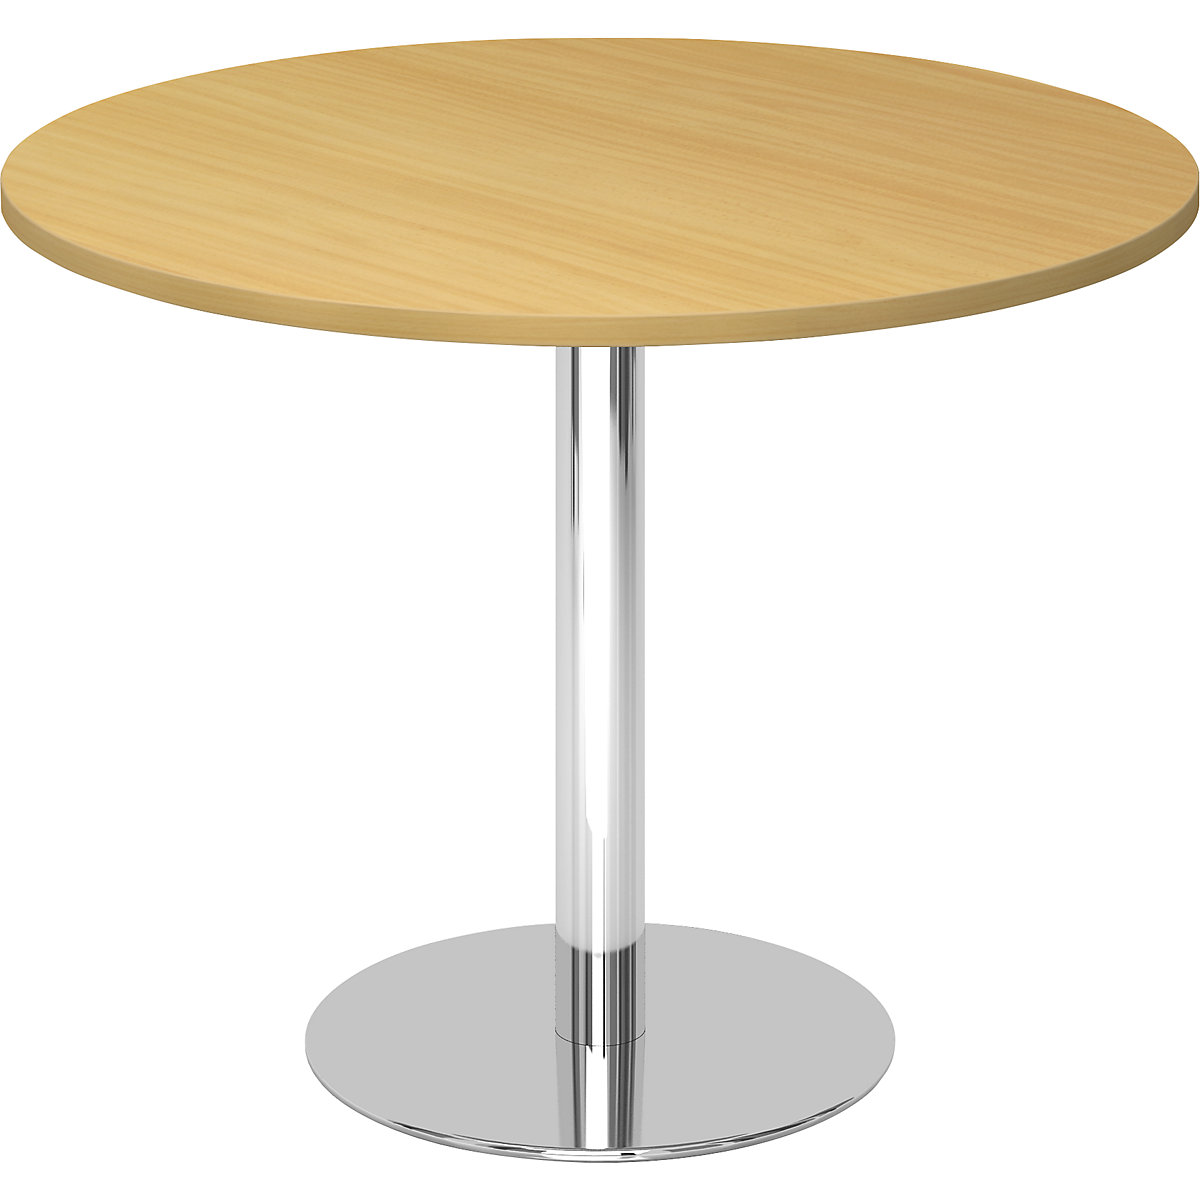 Tárgyalóasztal, Ø 1000 mm, 755 mm magas, krómozott váz, bükk-dekor asztallap